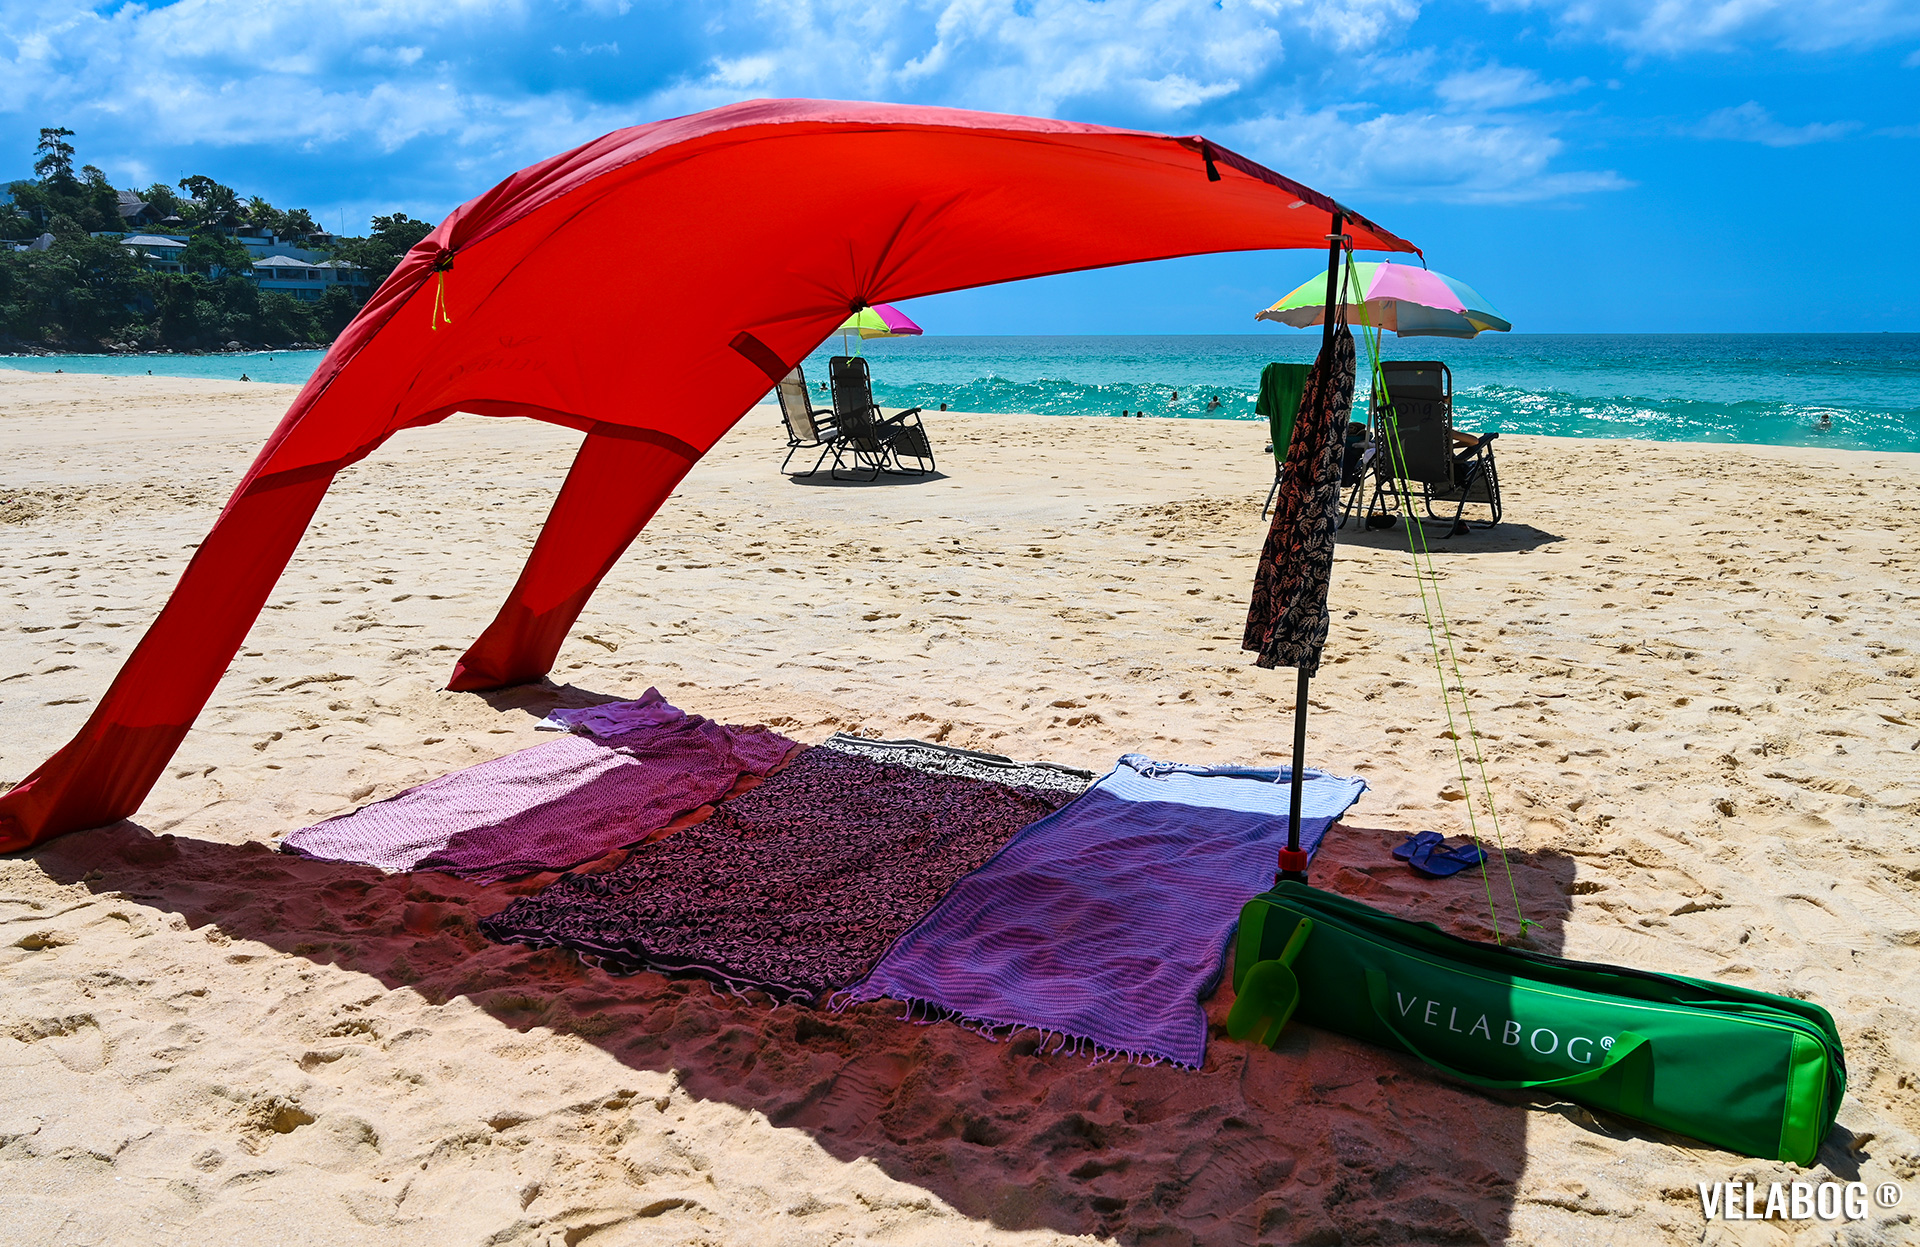 Strand Sonnensegel Strandzelt Velabog Breeze, rot. Vergleich mit Strandschirmen, grosszügiger Schatten. Bester Sonnenschutz Strand. Aufbauoption beim leichten bis starken Wind. Ansicht von vorne.